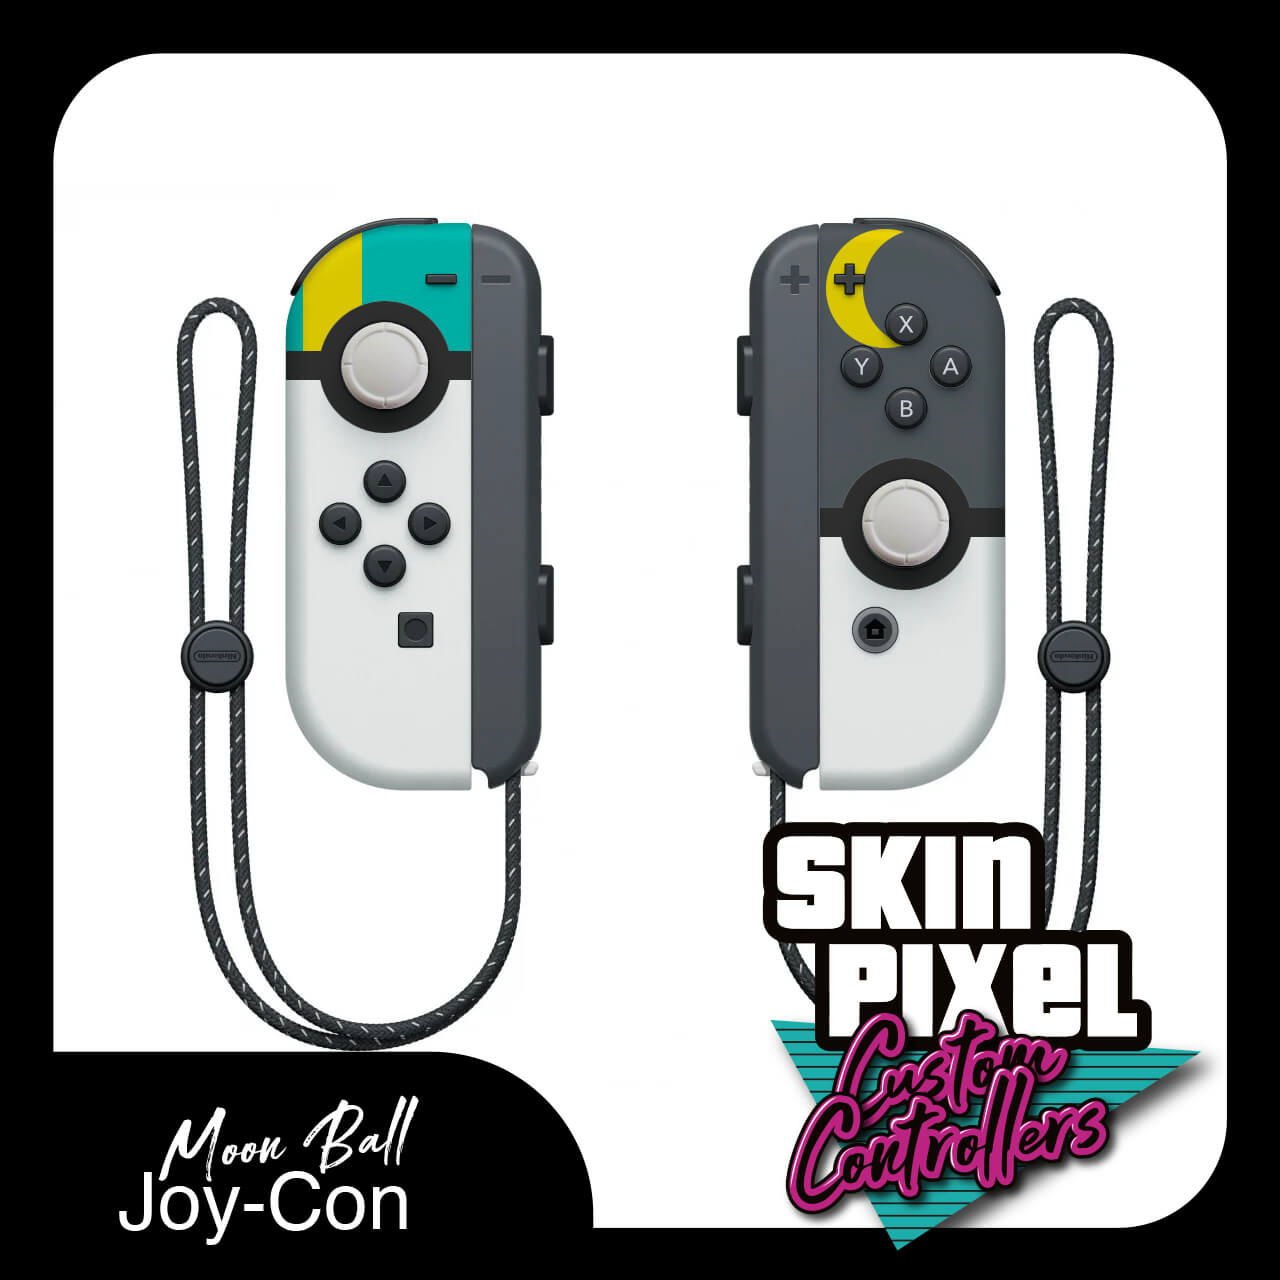 Pokemon Moon Ball - Joy-Con